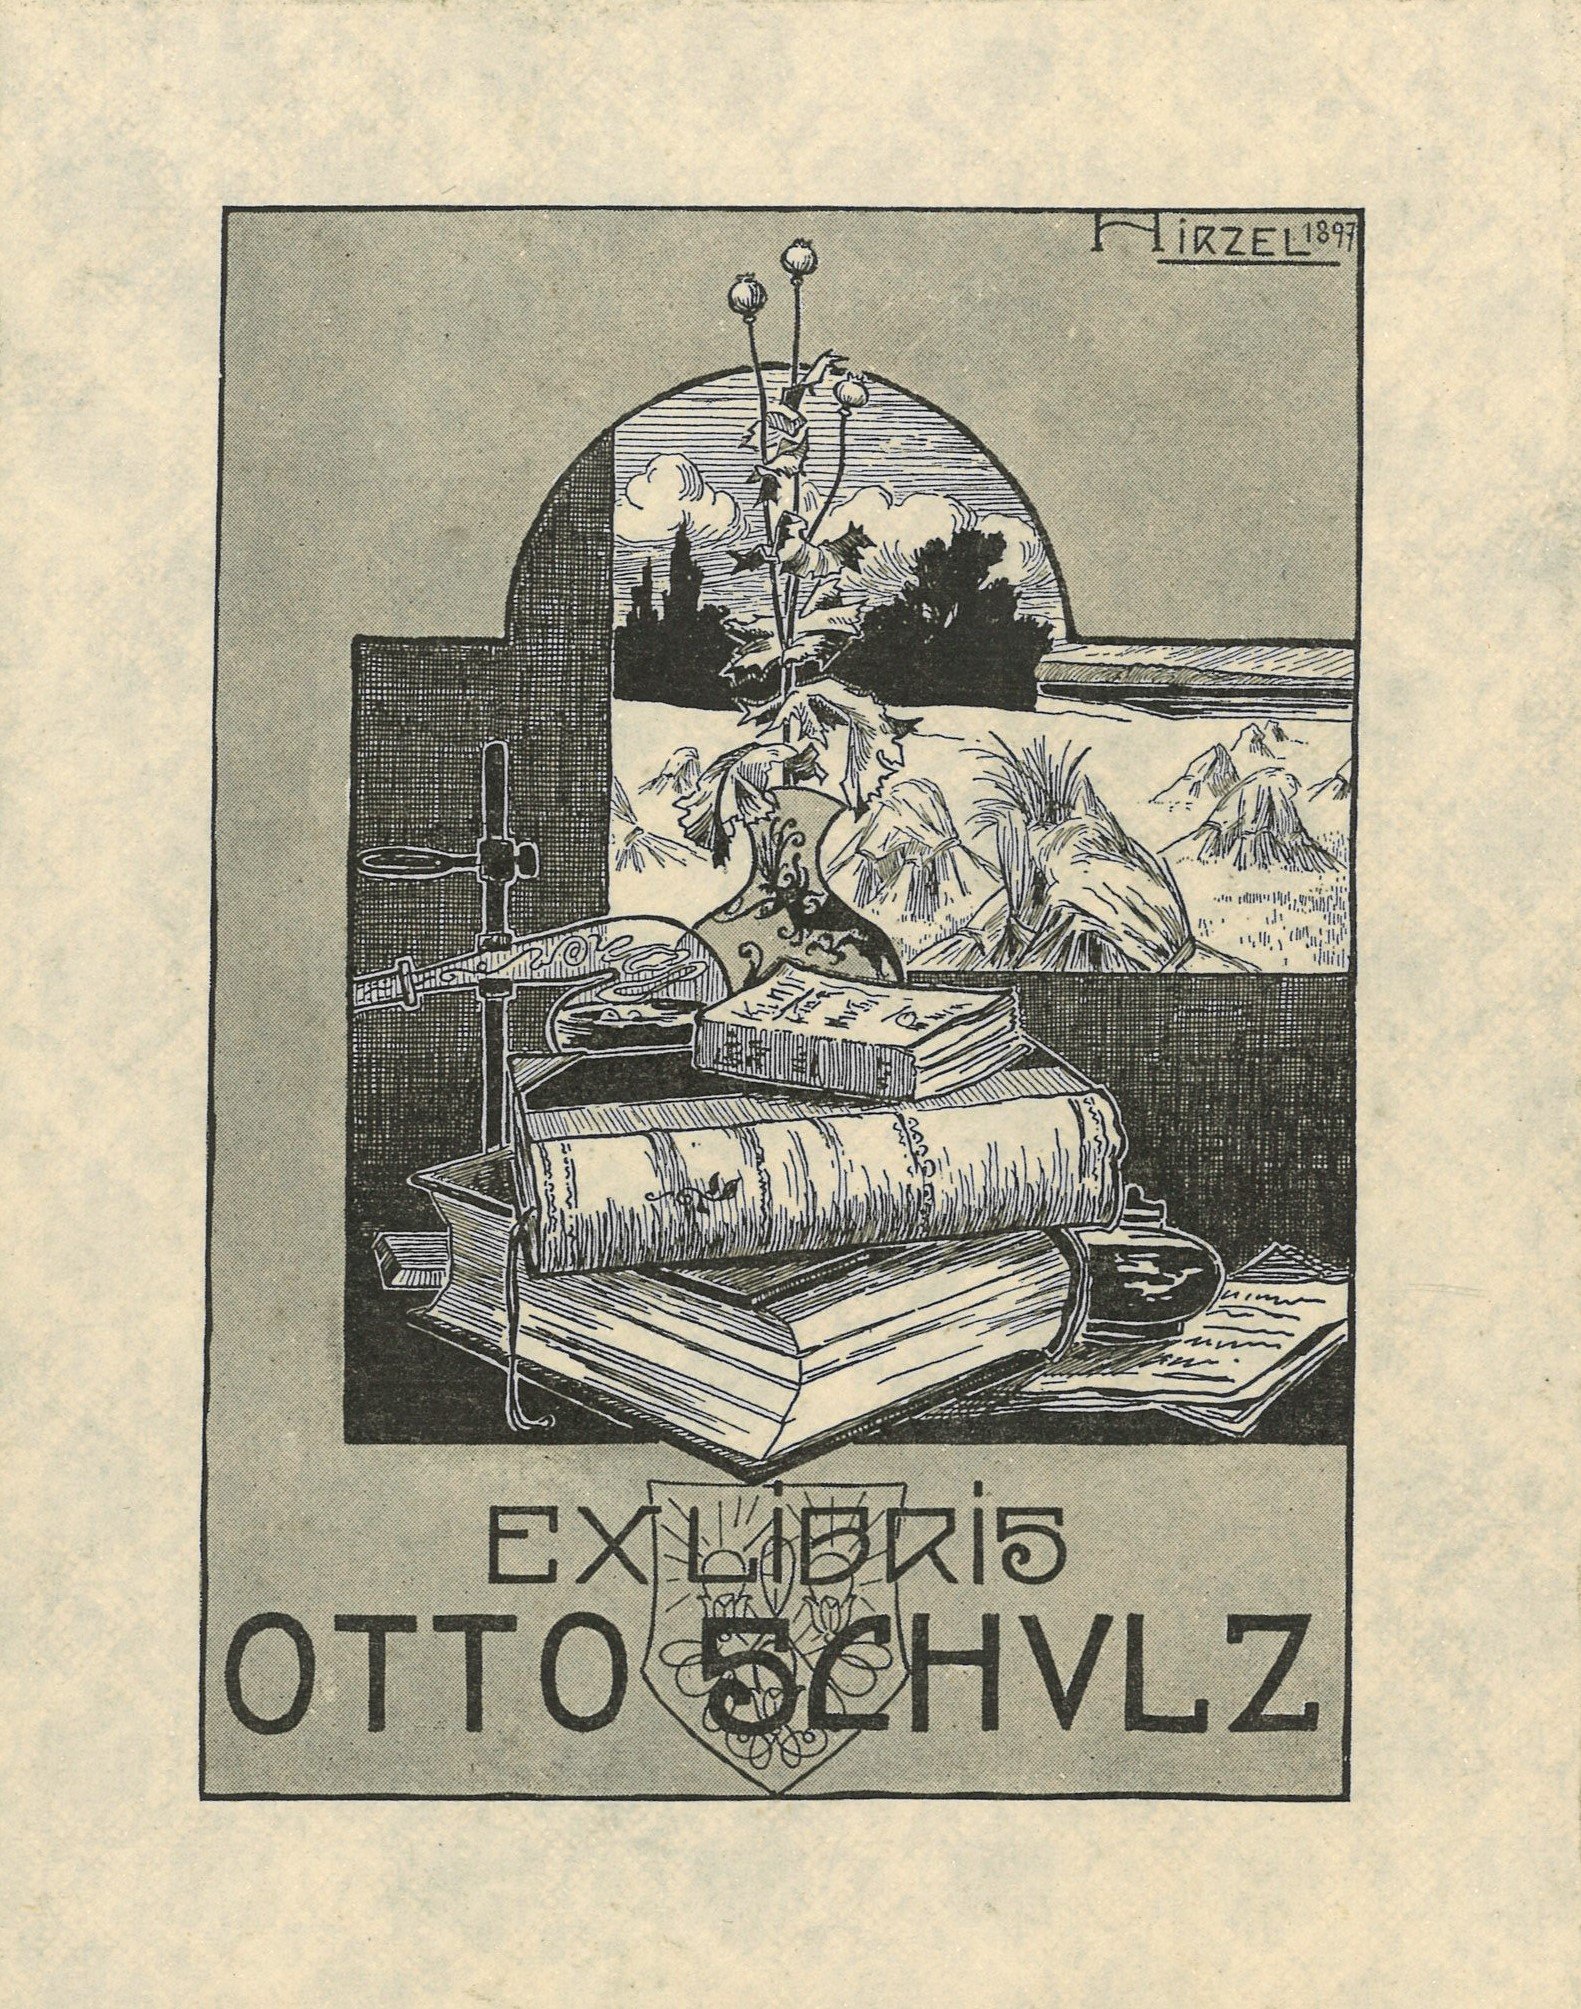 Exlibris Otto Schulz (Landesgeschichtliche Vereinigung für die Mark Brandenburg e.V. CC BY)